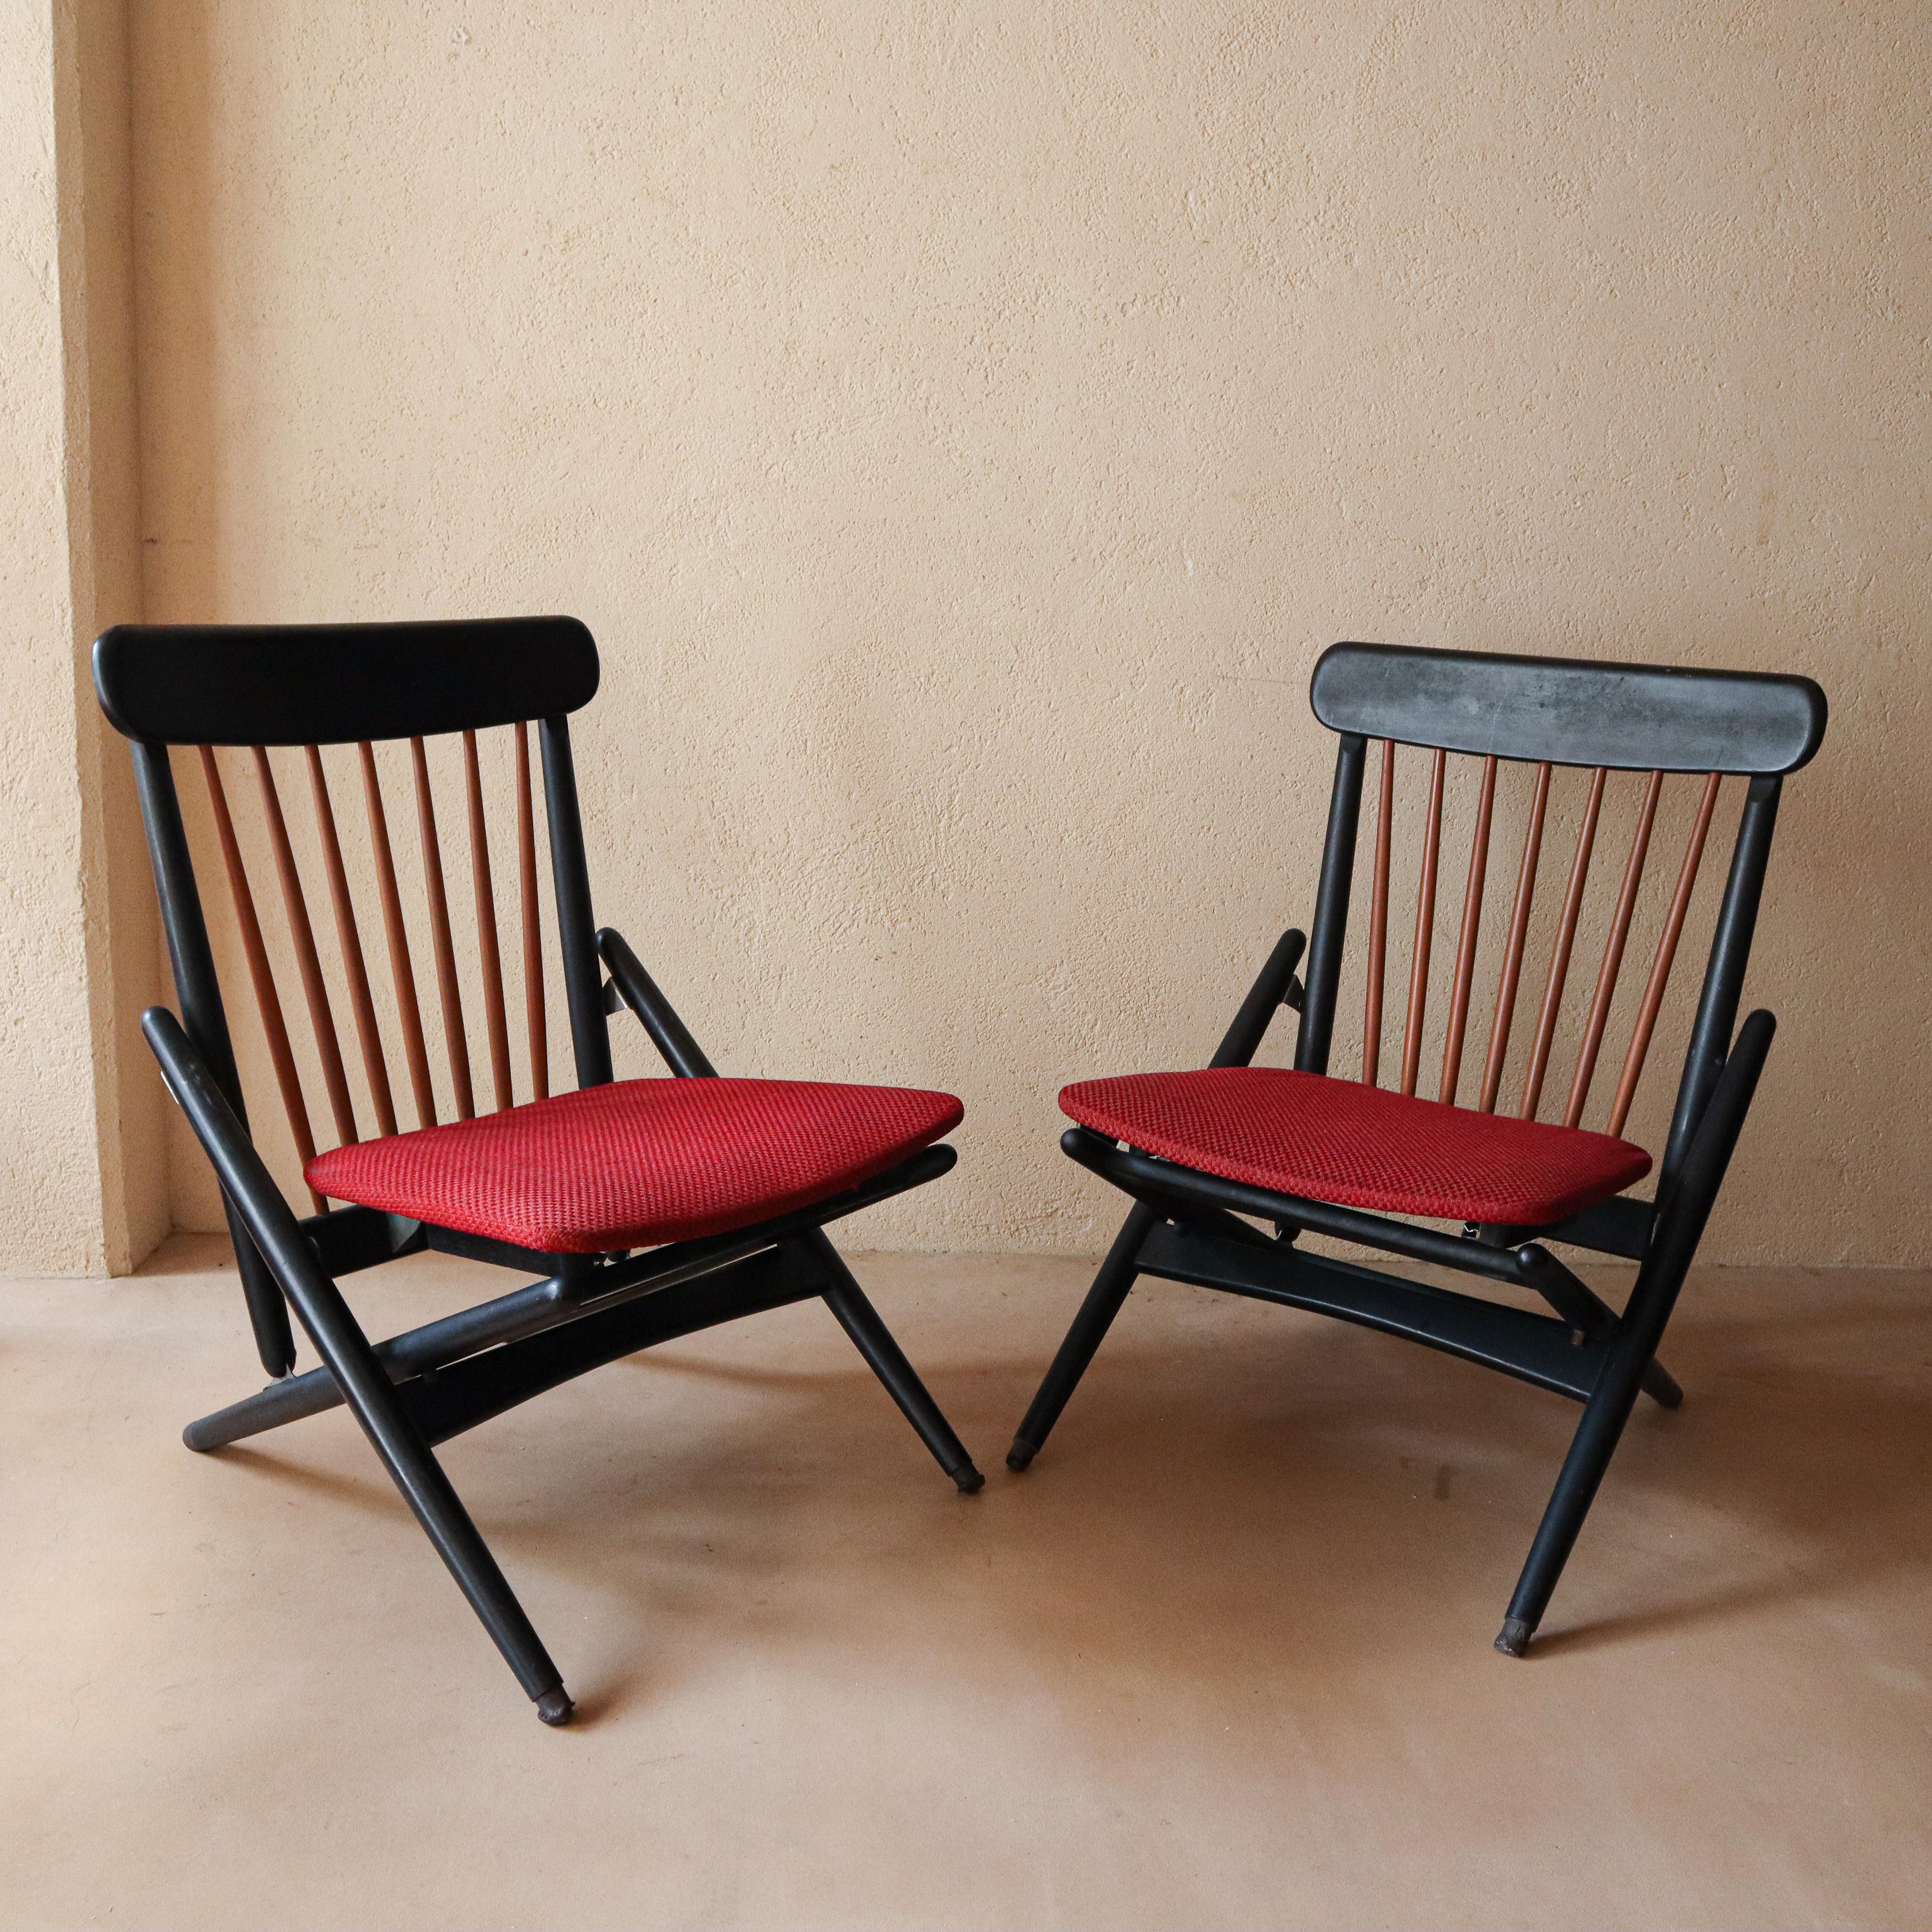 Ähnlich wie die ikonischen Seilstühle, die Maruni in den 1950er Jahren herstellte, wurden diese Stühle in den 1960er Jahren produziert, sind aber viel seltener und schwerer zu bekommen. Durch die Verwendung natürlicher Holzspindeln, die einen